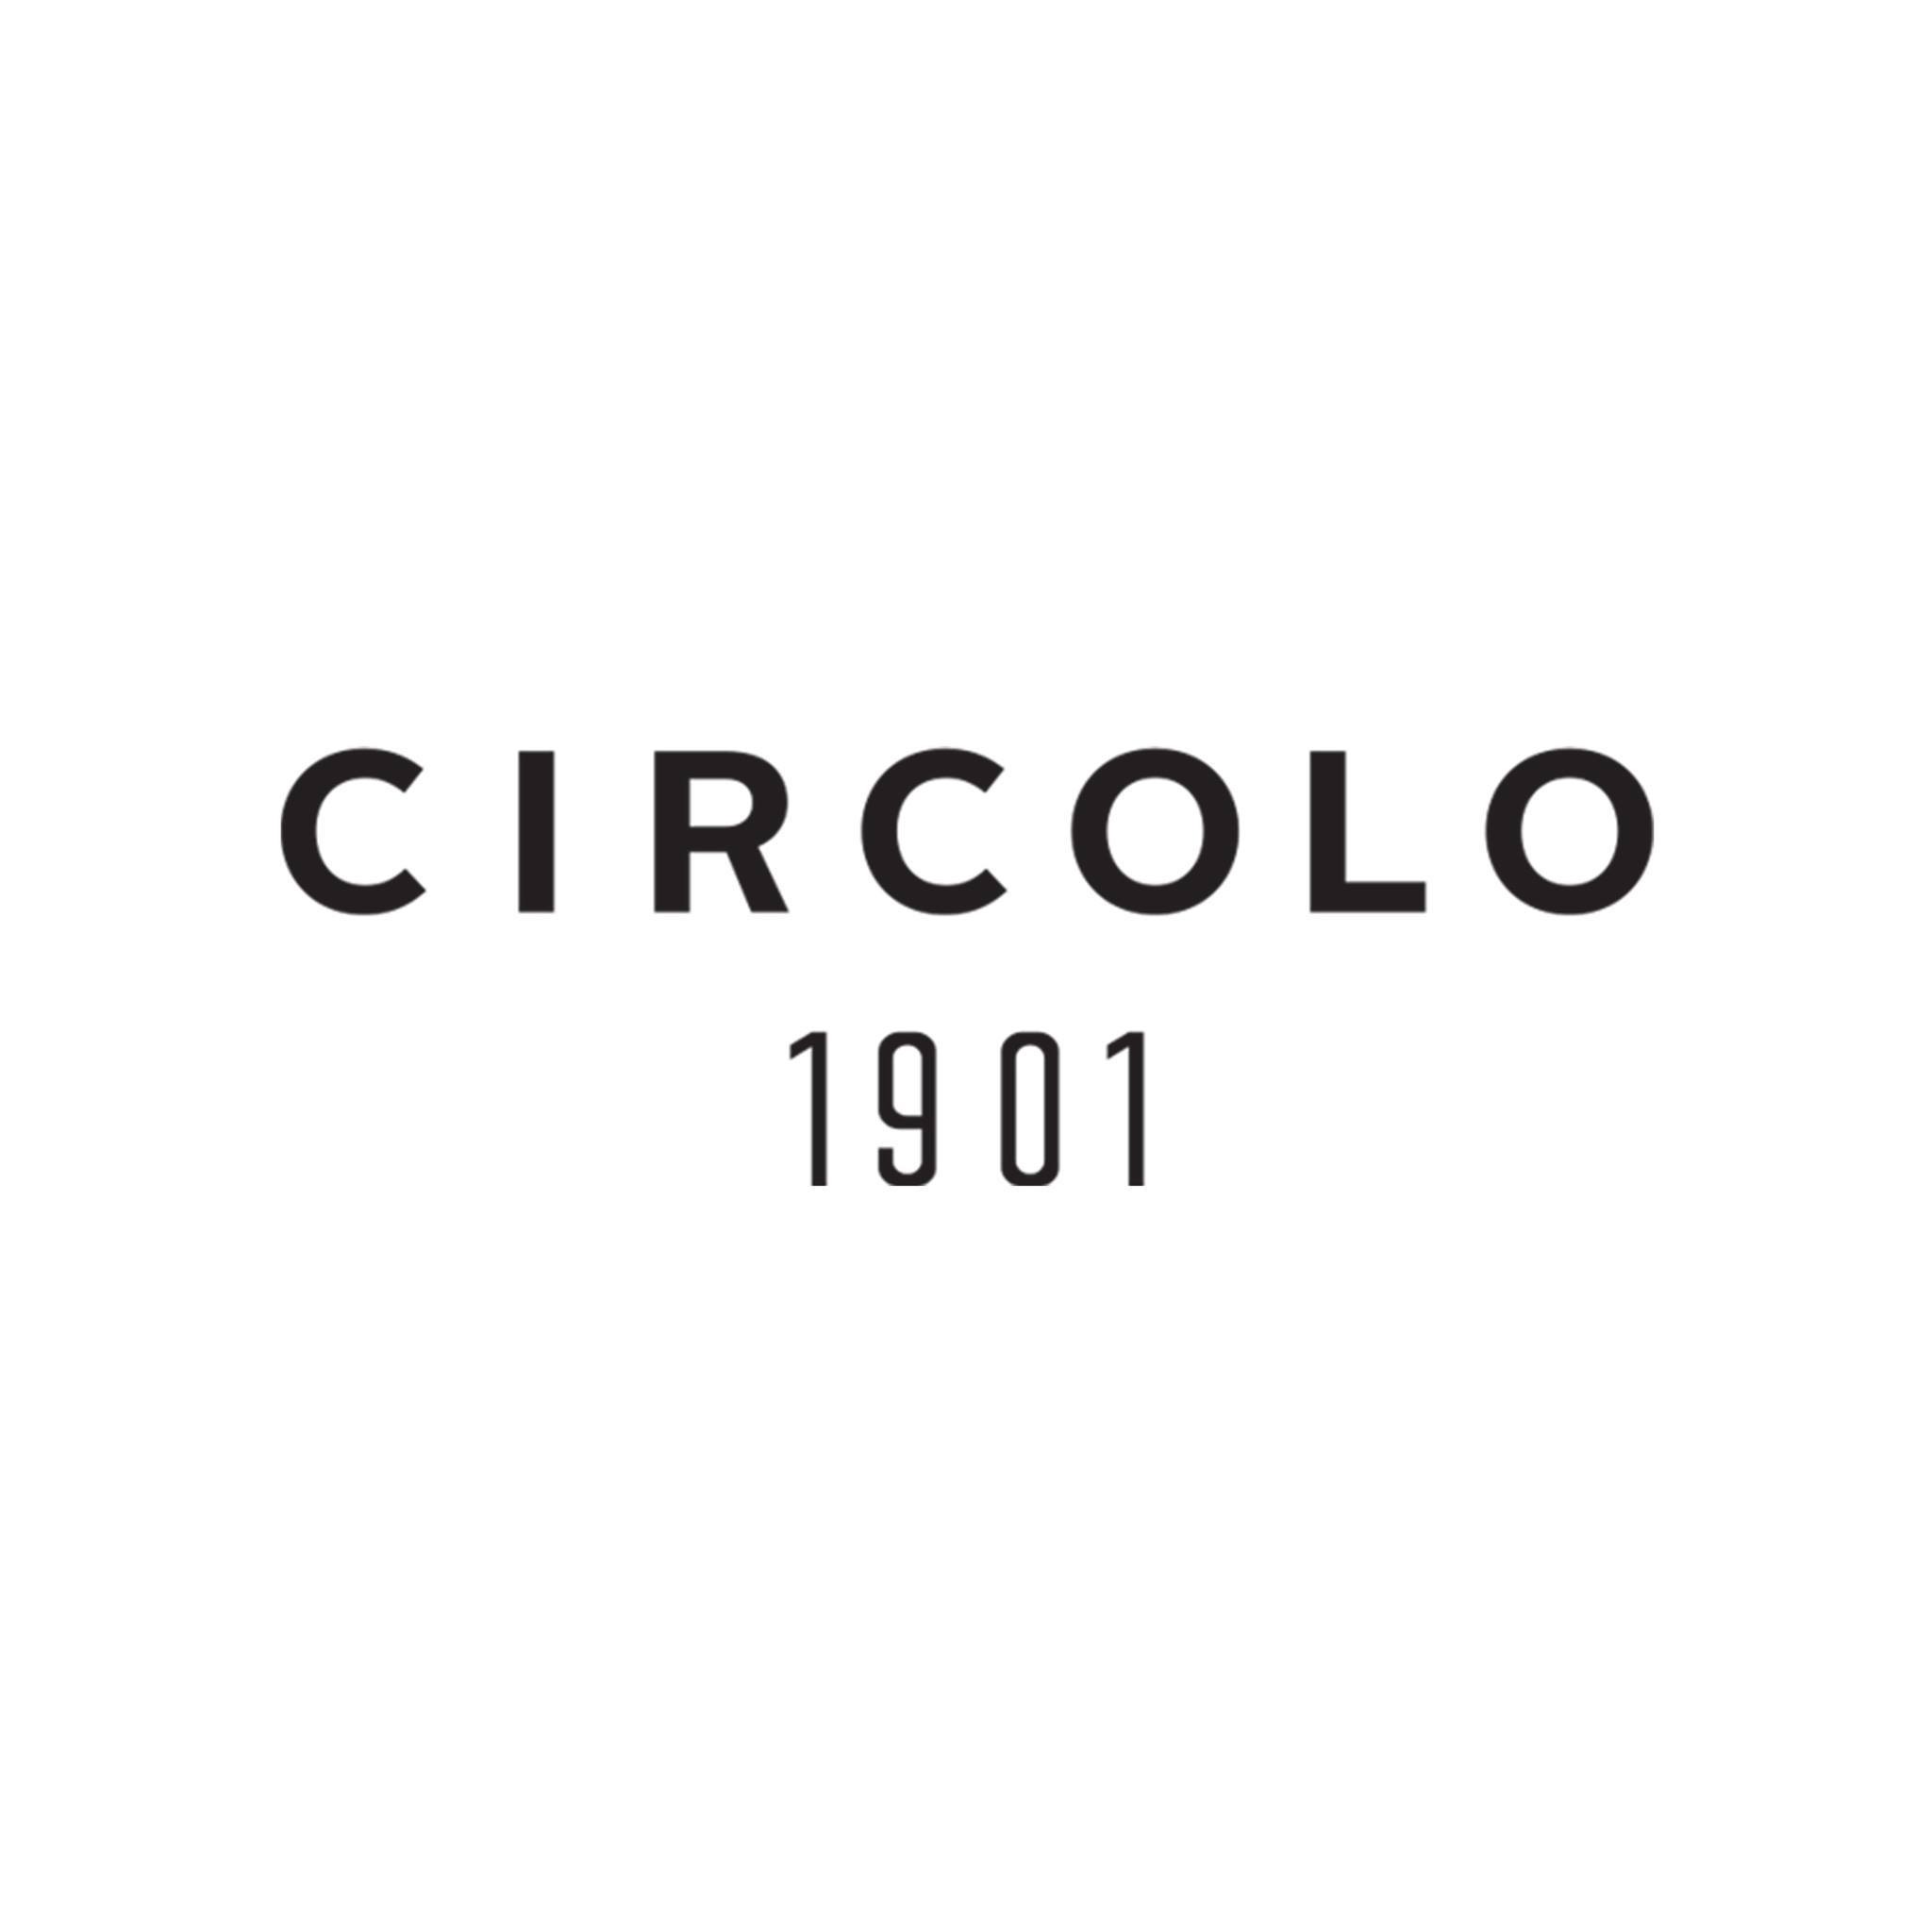 CIRCOLO 1901